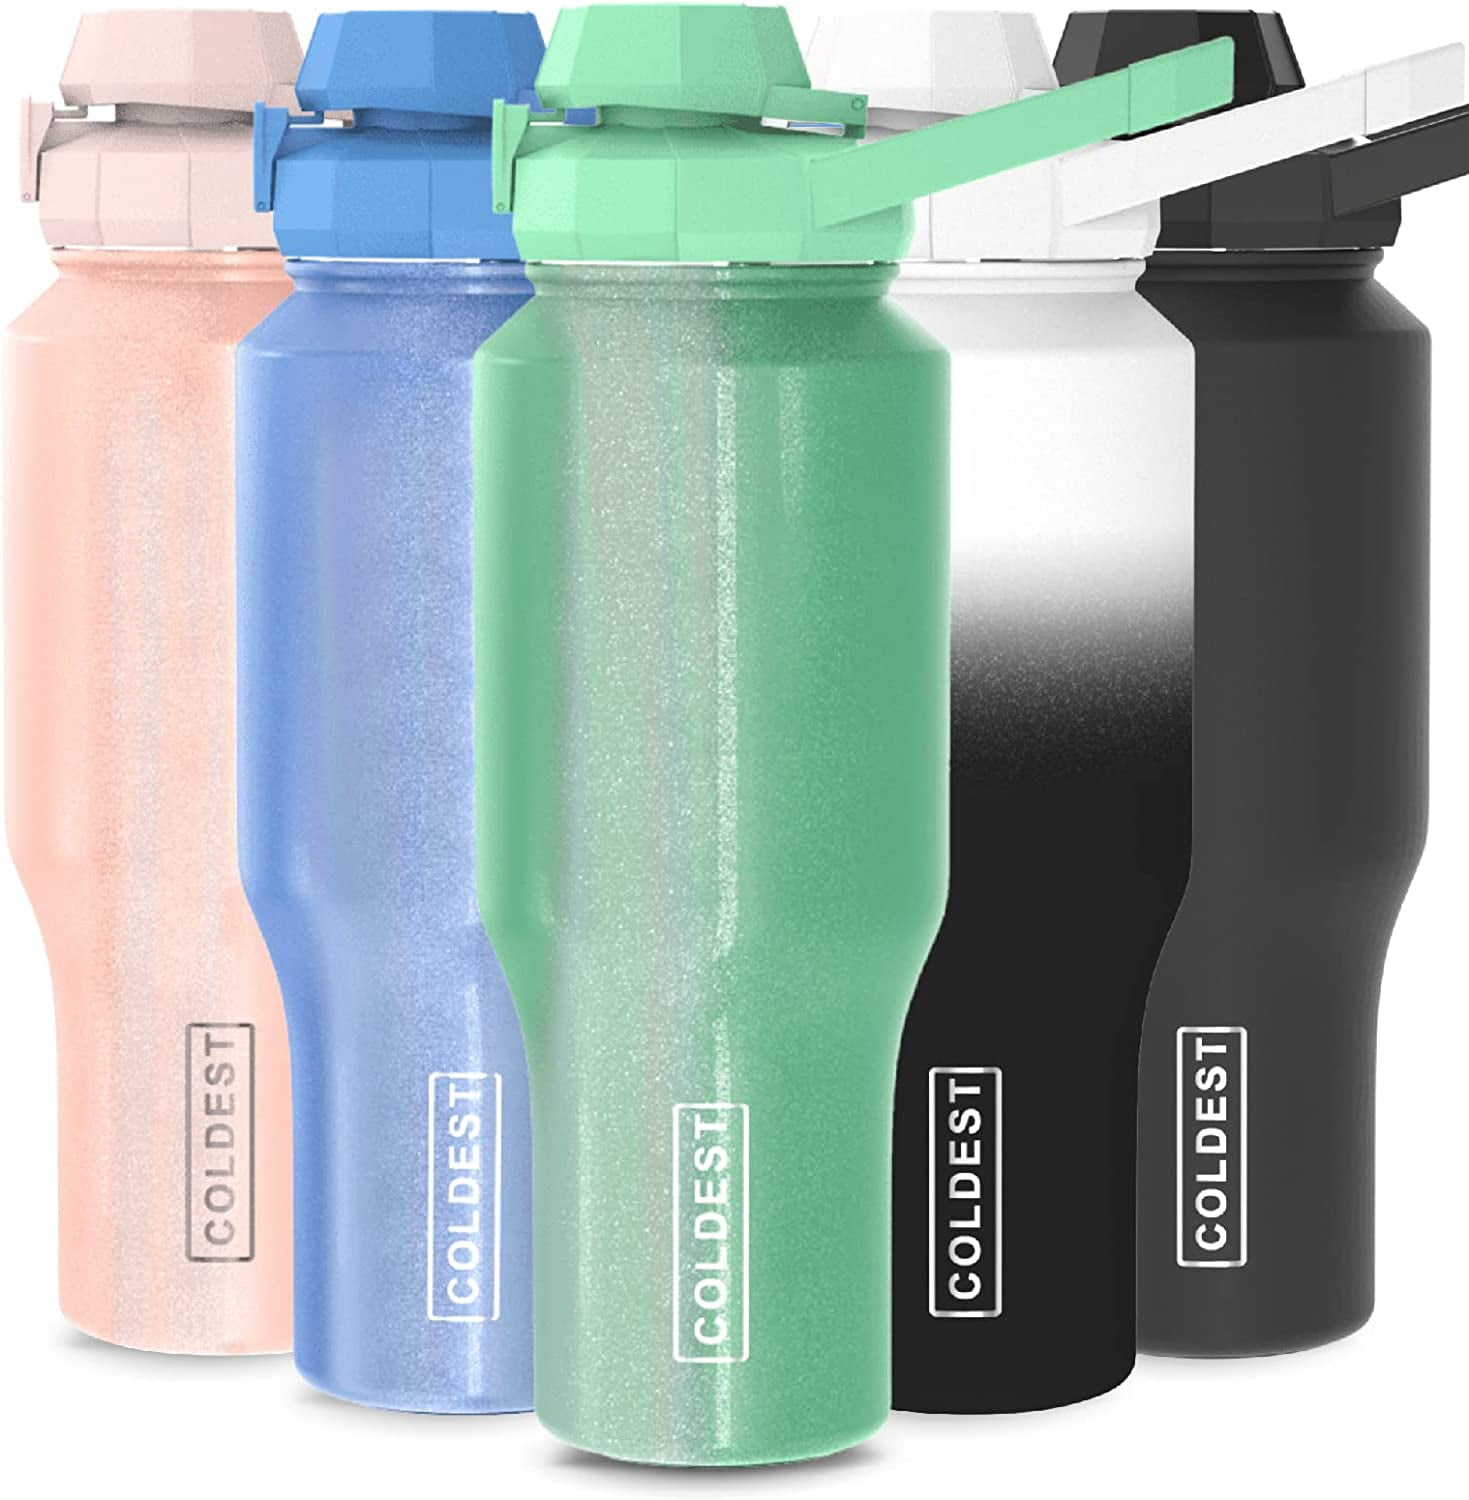 Plastic Shaker Bottle With Small Stainless Blender Ball For